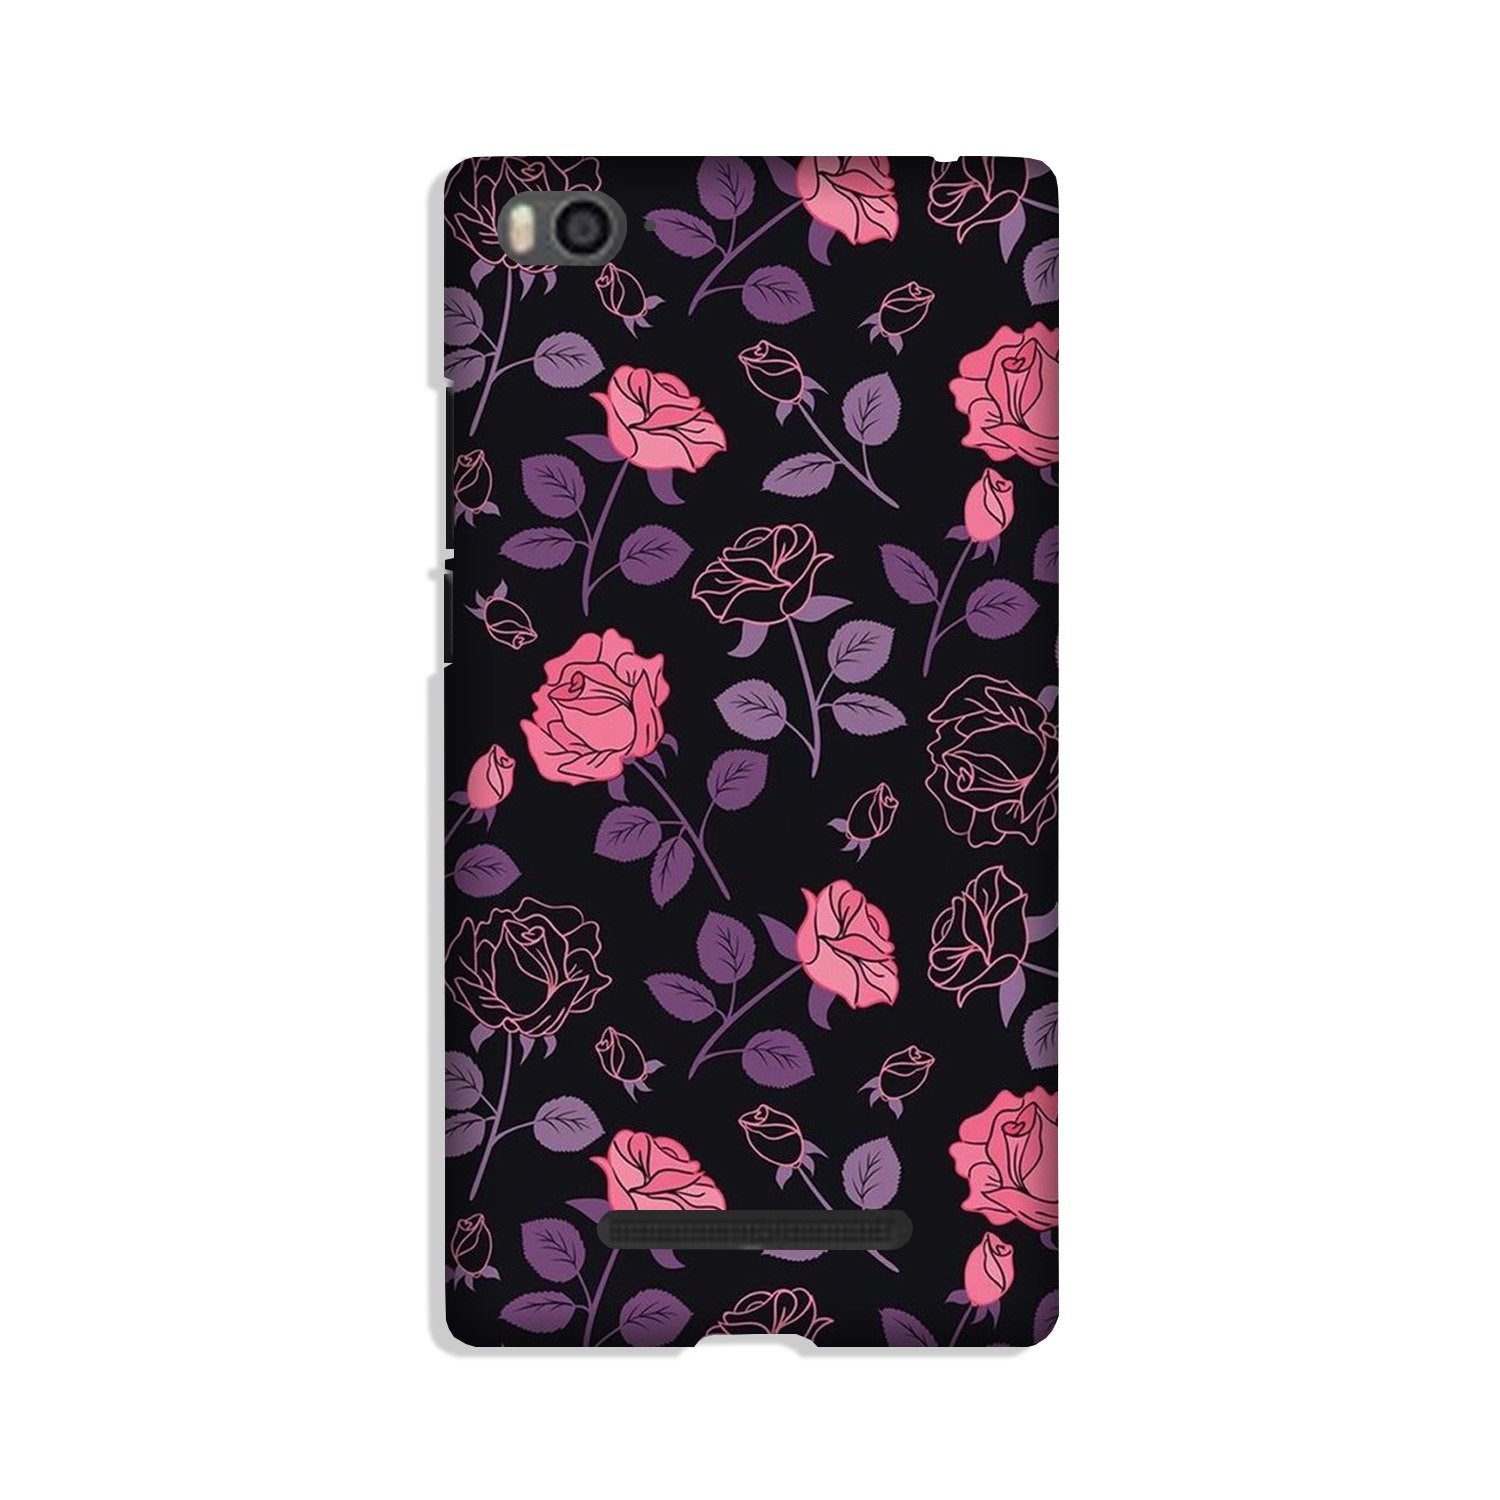 Rose Black Background Case for Xiaomi Redmi 5A